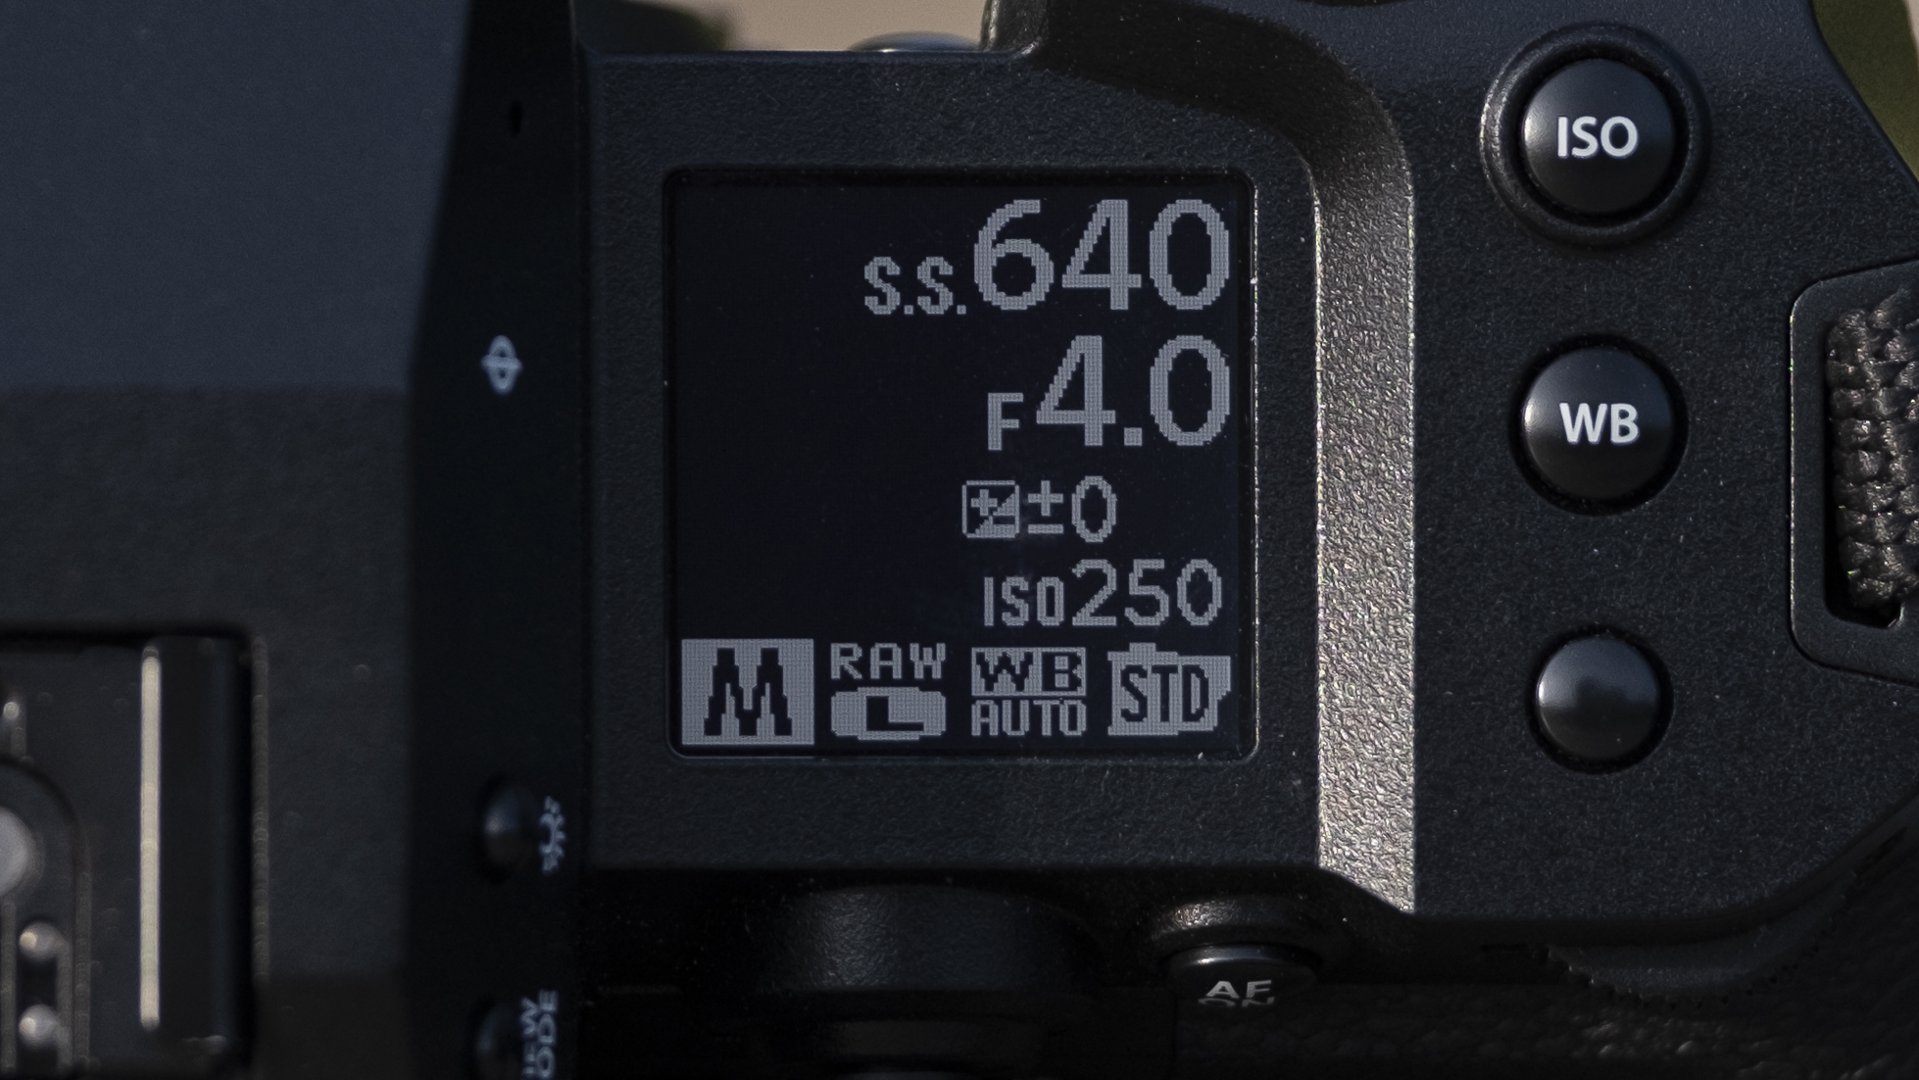 Fujifilm X-H2S kamera på en träbänk